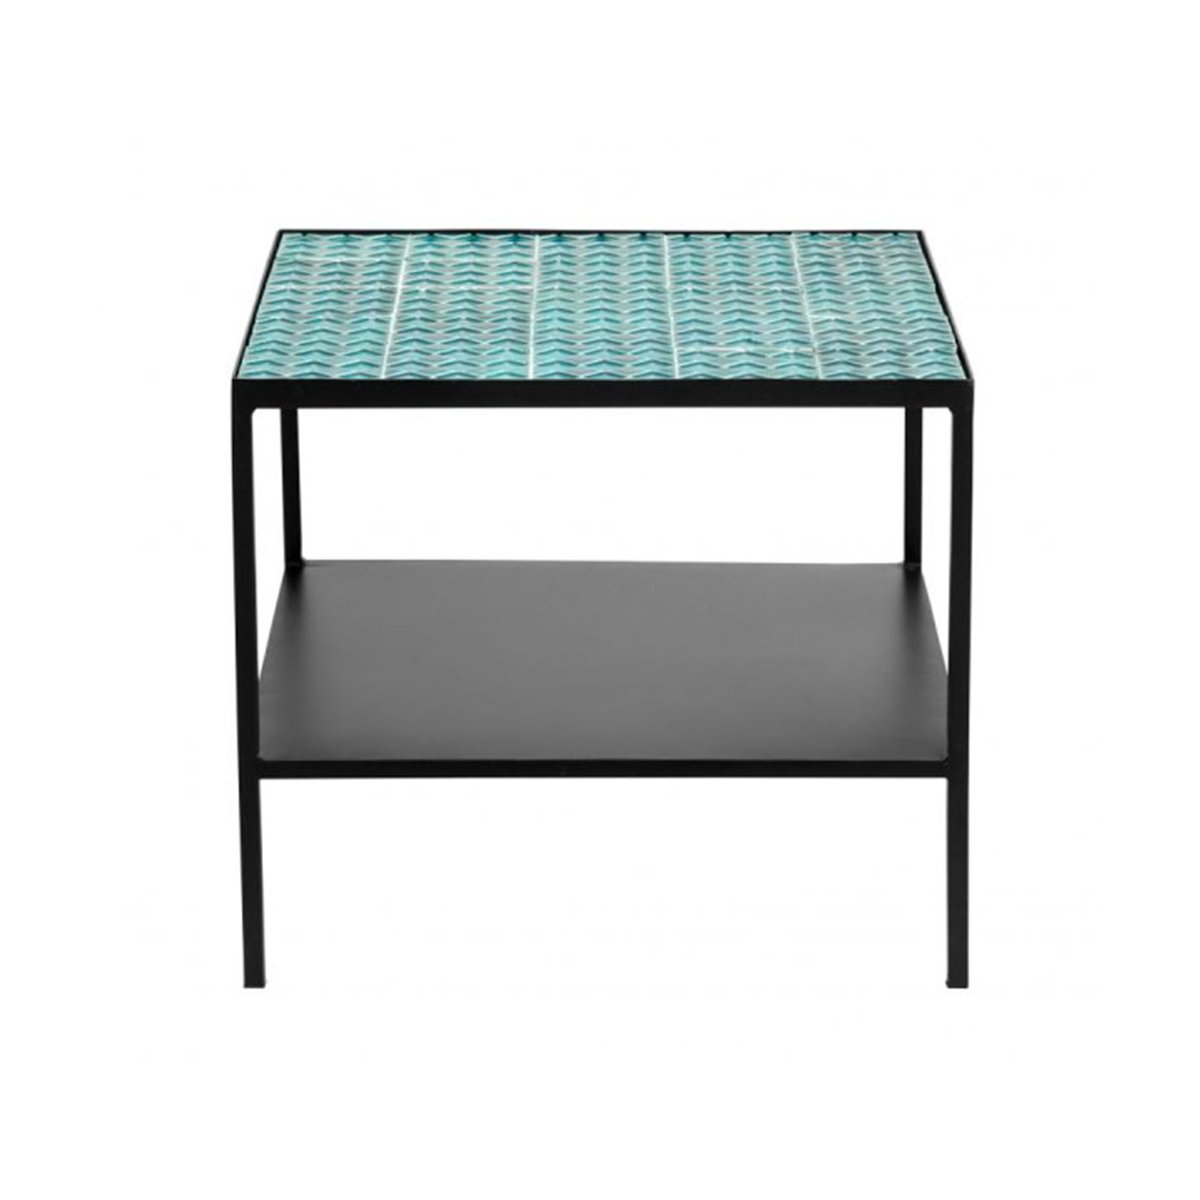 Table basse design mosaique et métal - Nordal